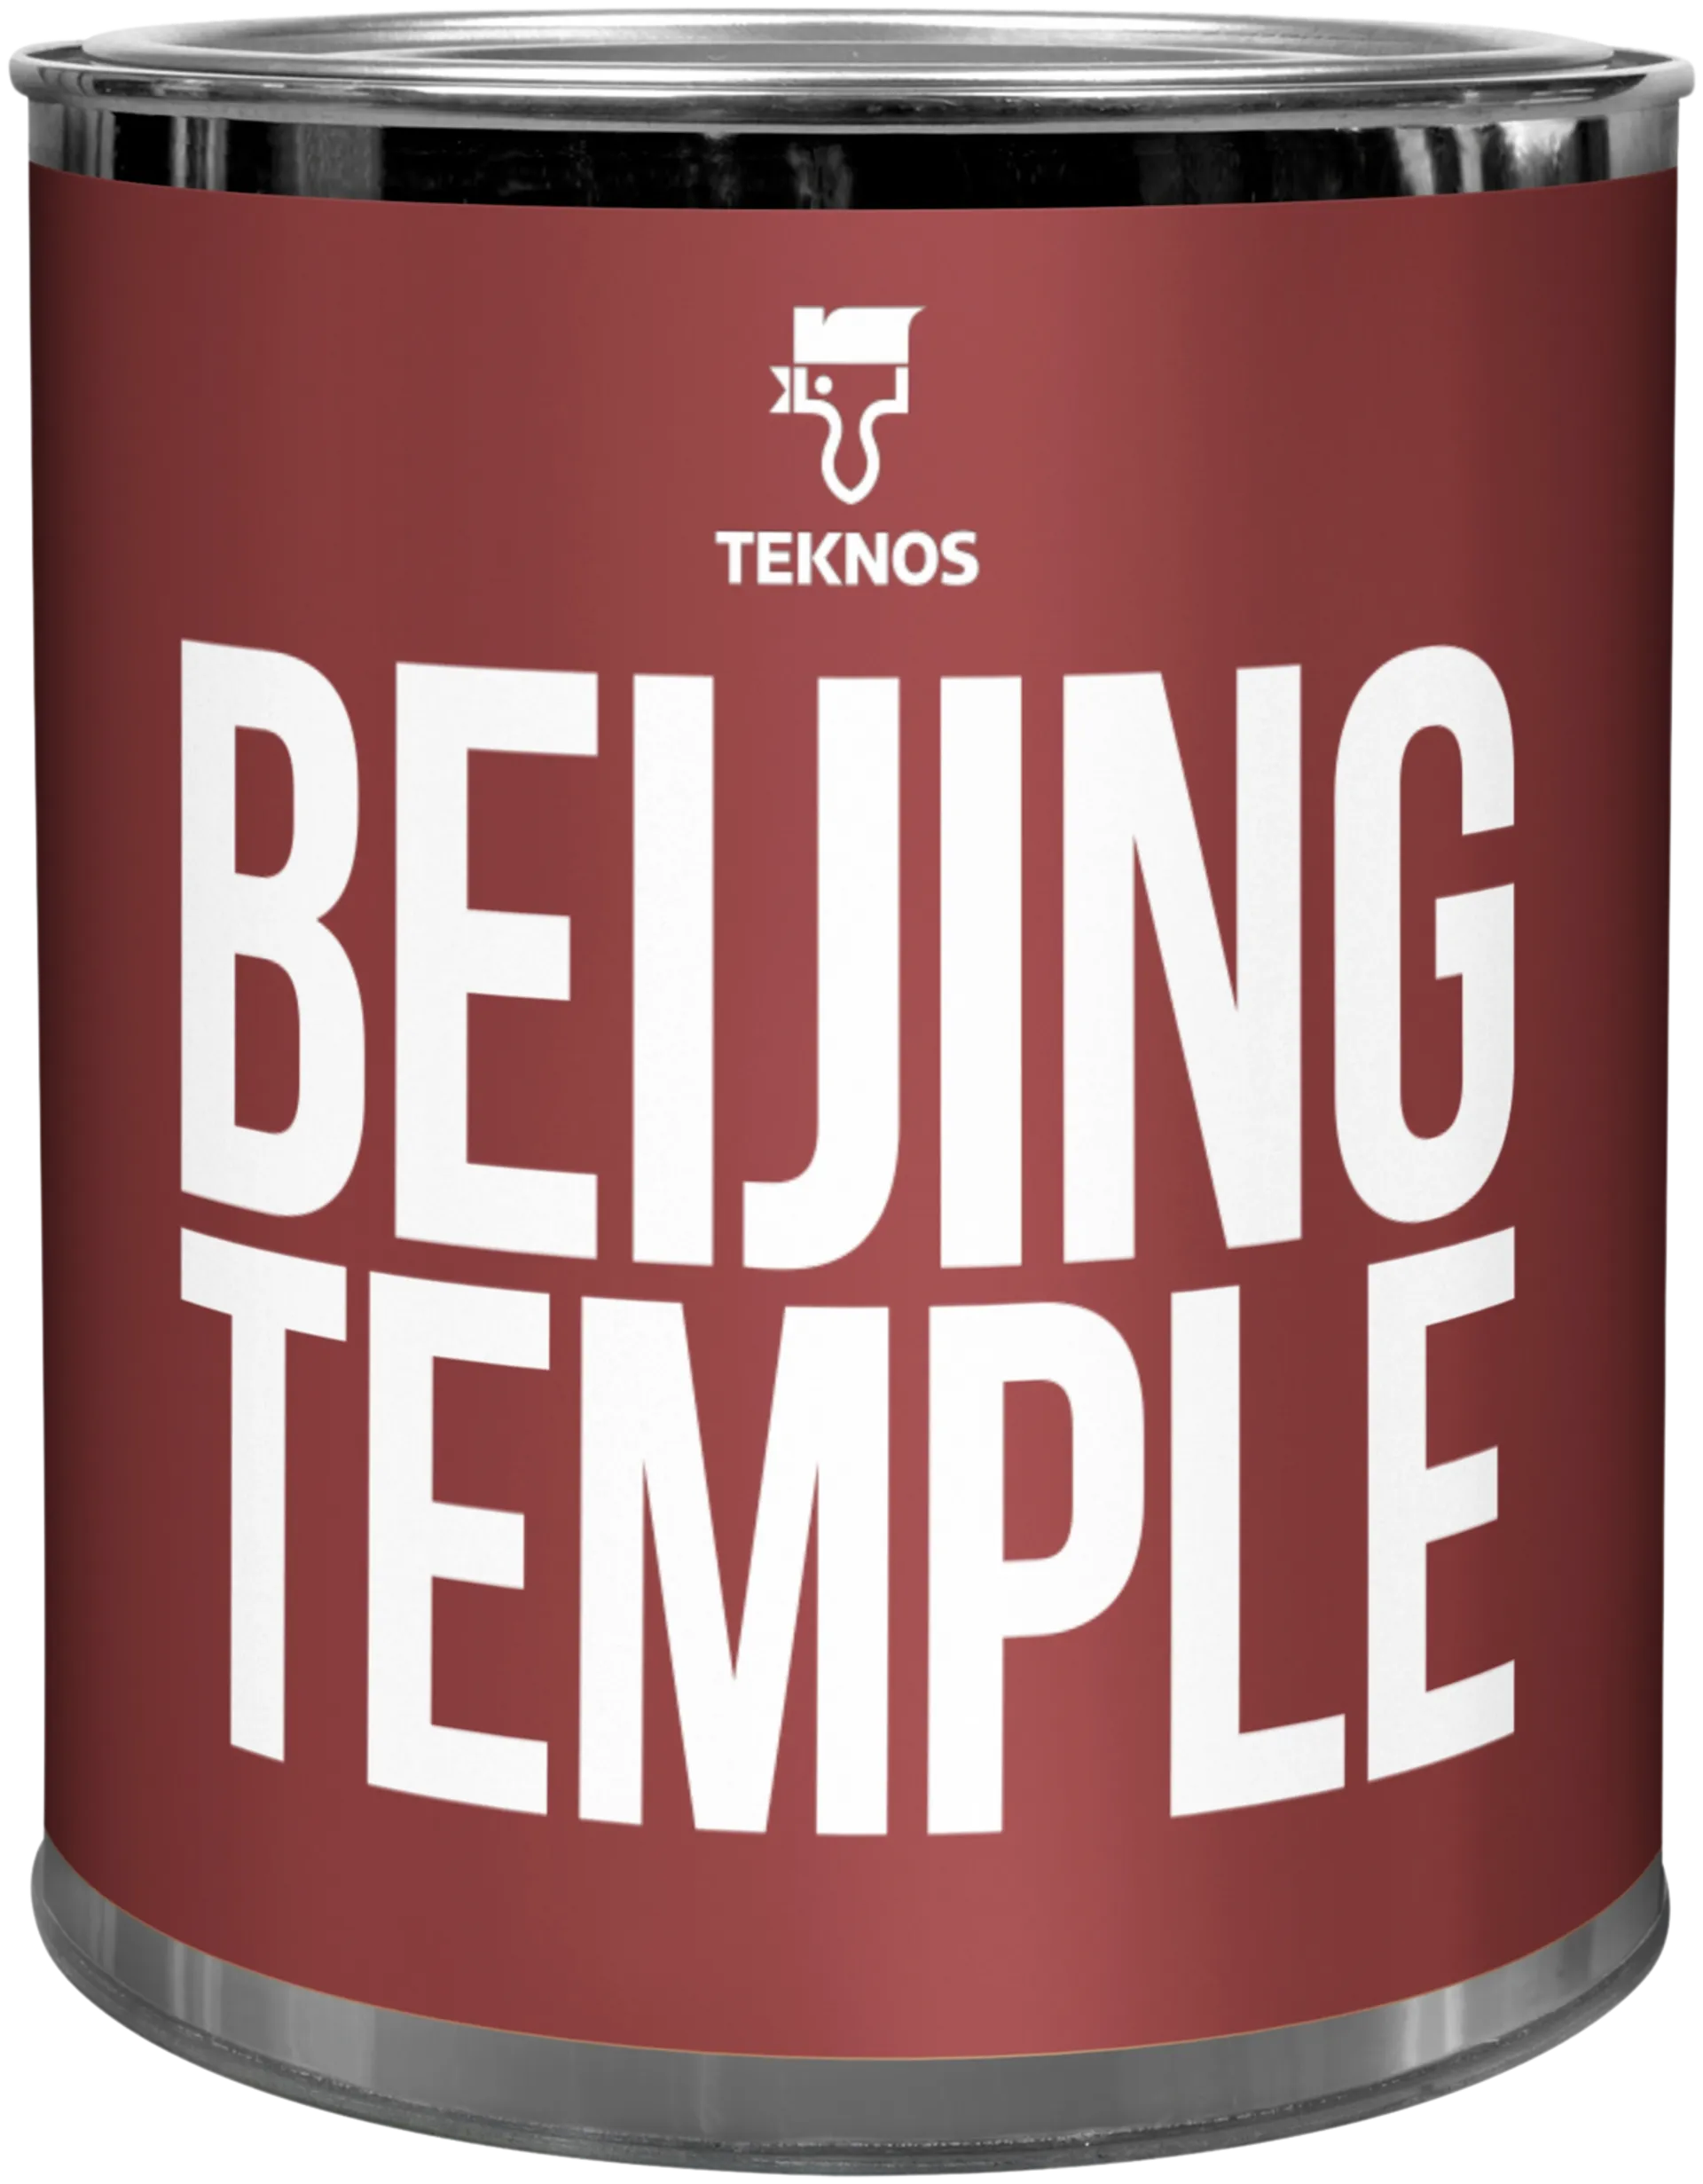 Teknos Colour sample Beijing temple T1547